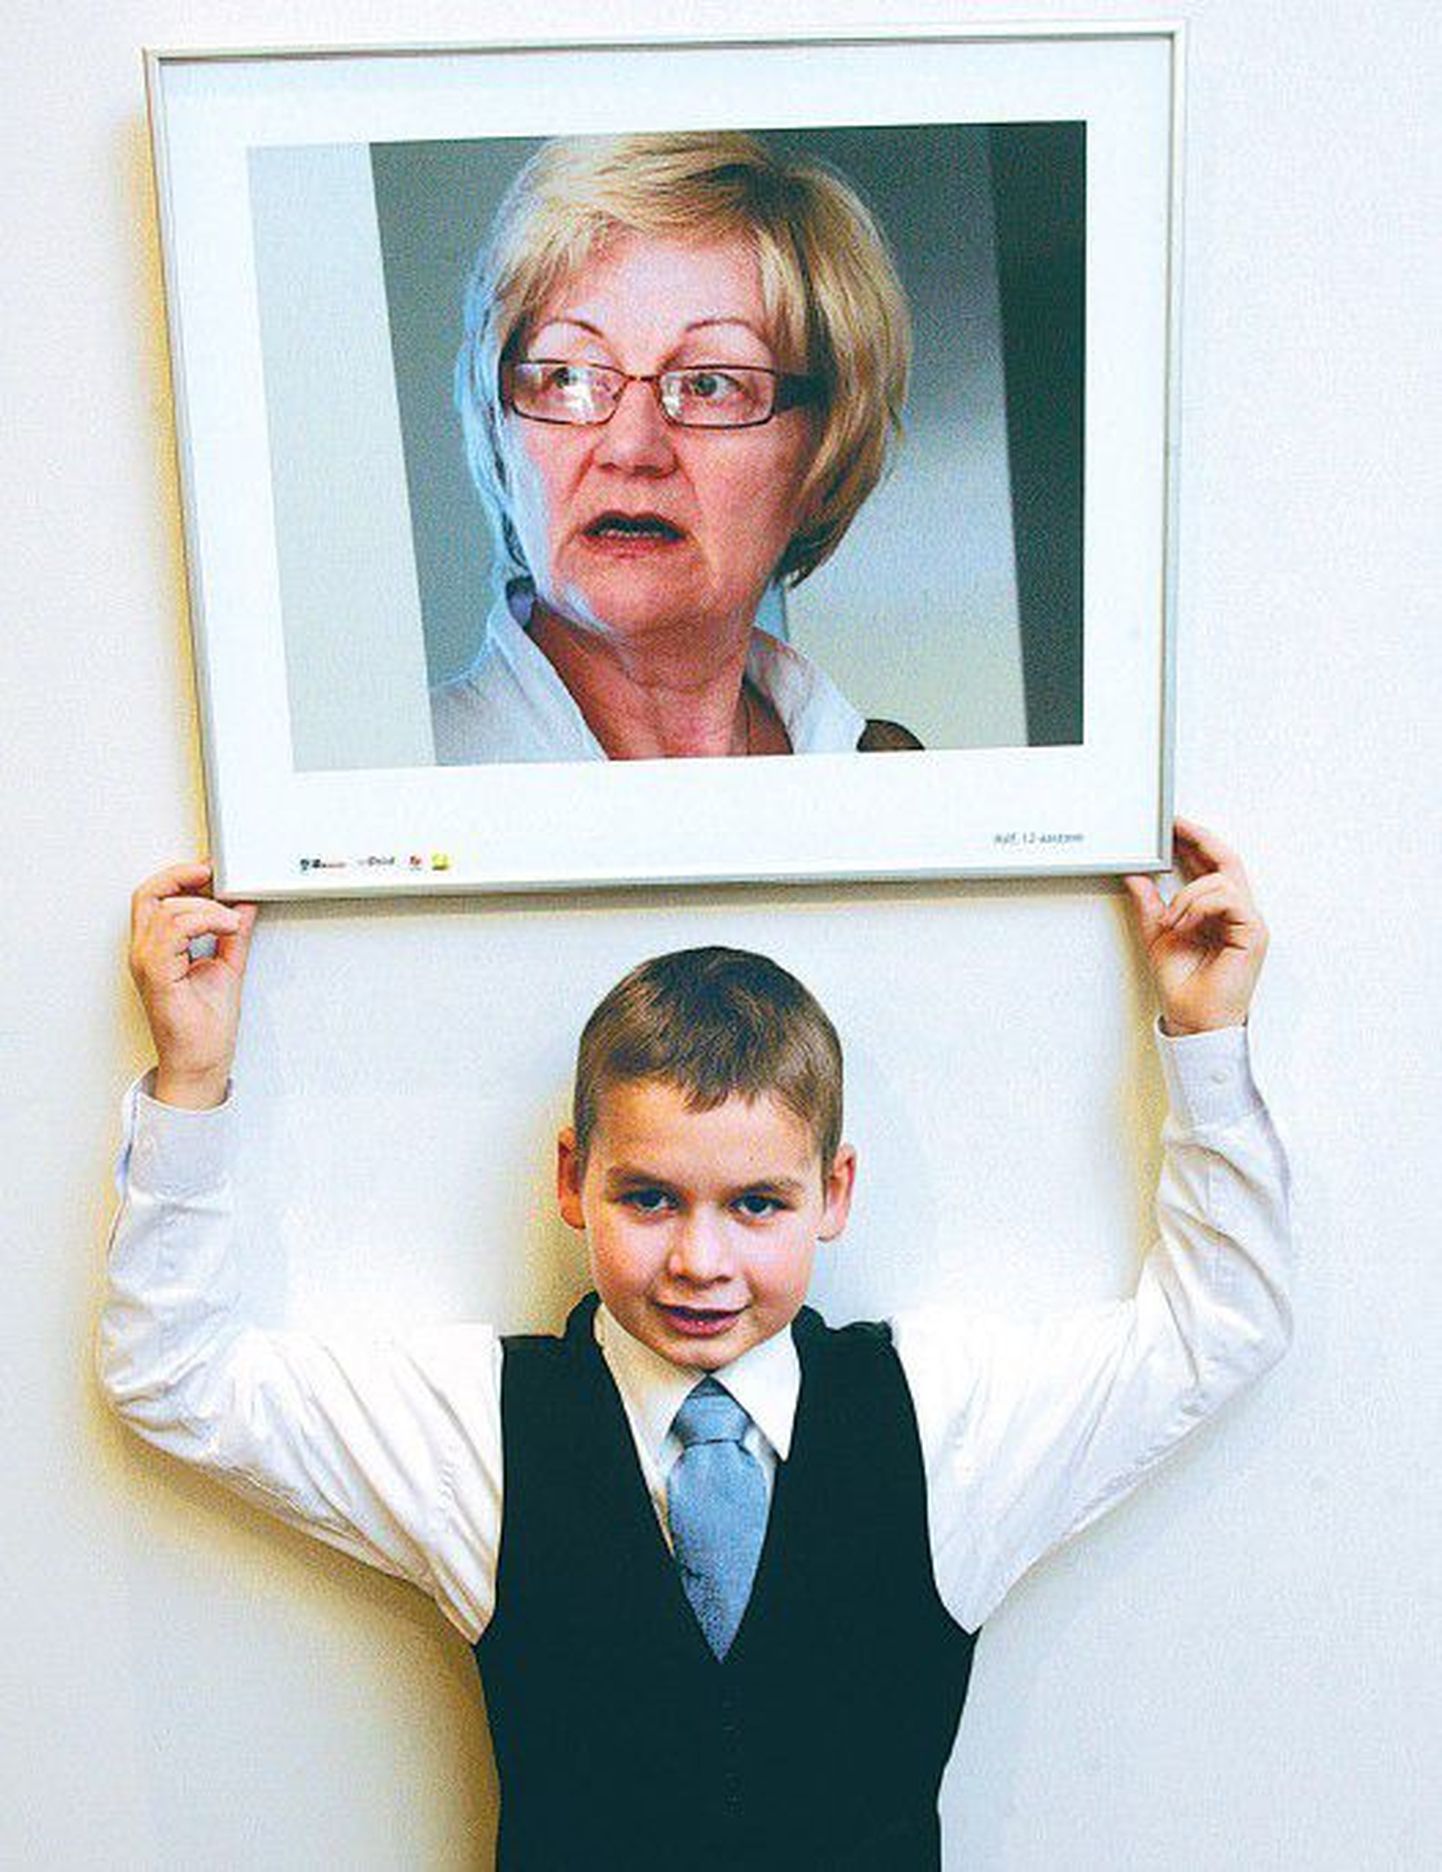 12-летний Ральф Пыллукиви позирует со снимком врача, который он сделал, как только получил в руки фотоаппарат в фотокружке, организованном в Таллиннской детской больнице.